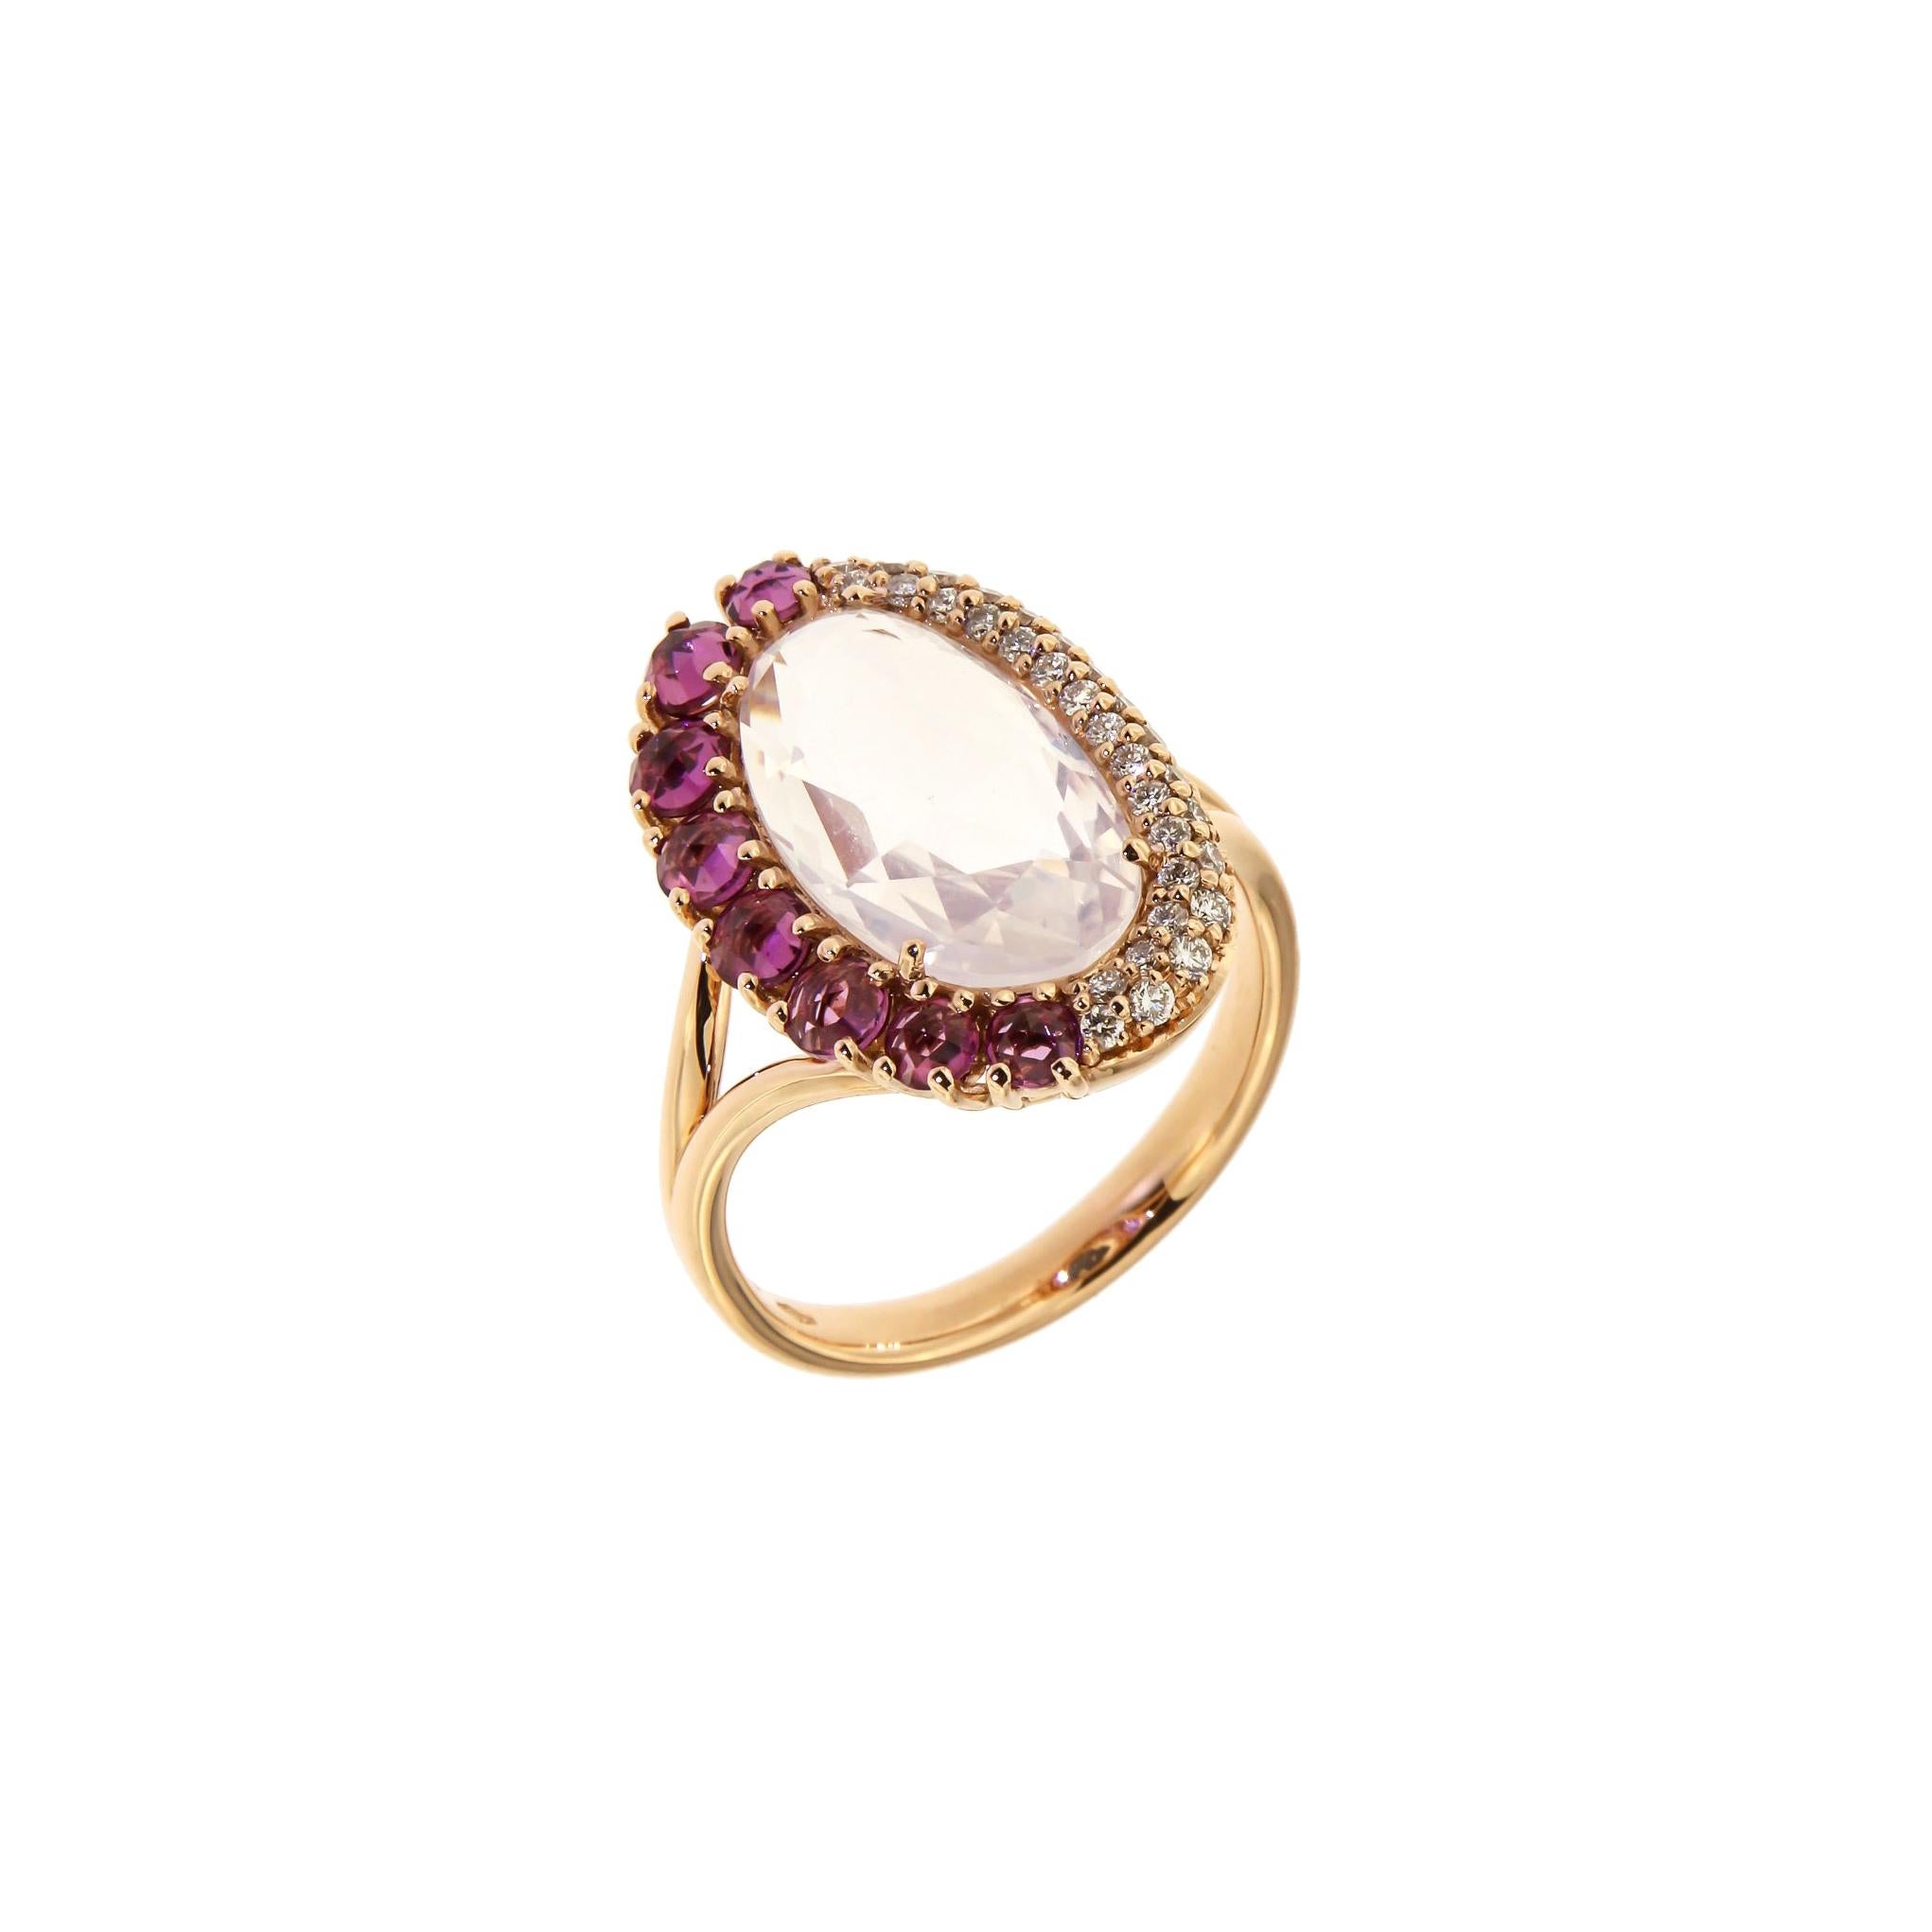 Italian Breathtaking 18k Quartz Rhodolite Brown Diamonds Rose Gold Ring for Her